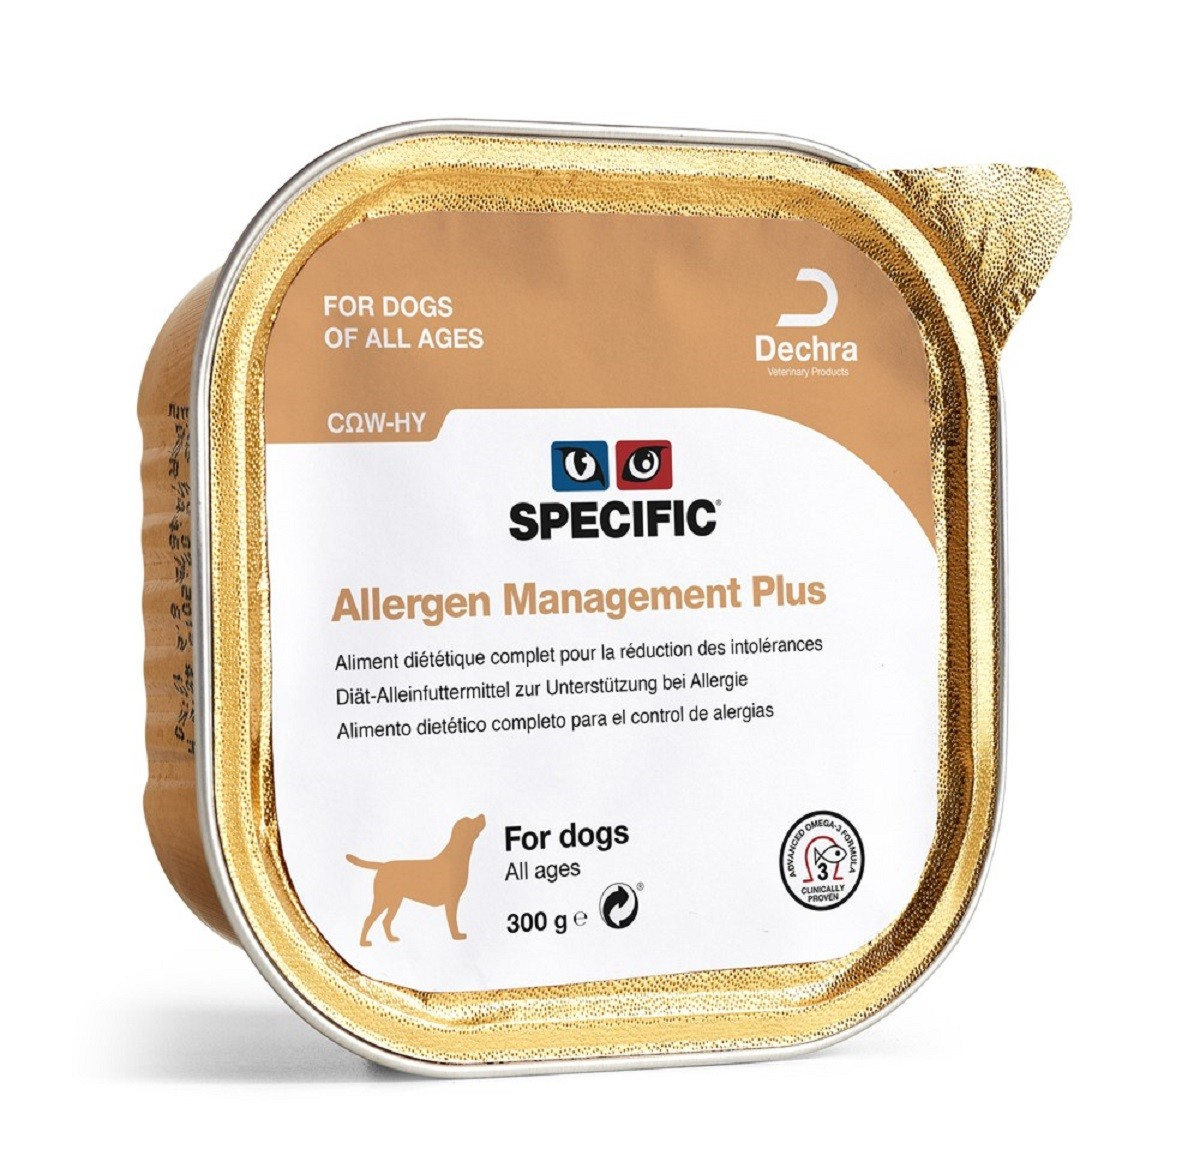 Confezione di 6 Patè SPECIFIC COW-HY Allergy Management Plus 300g per Cani e Cuccioli Sensibili